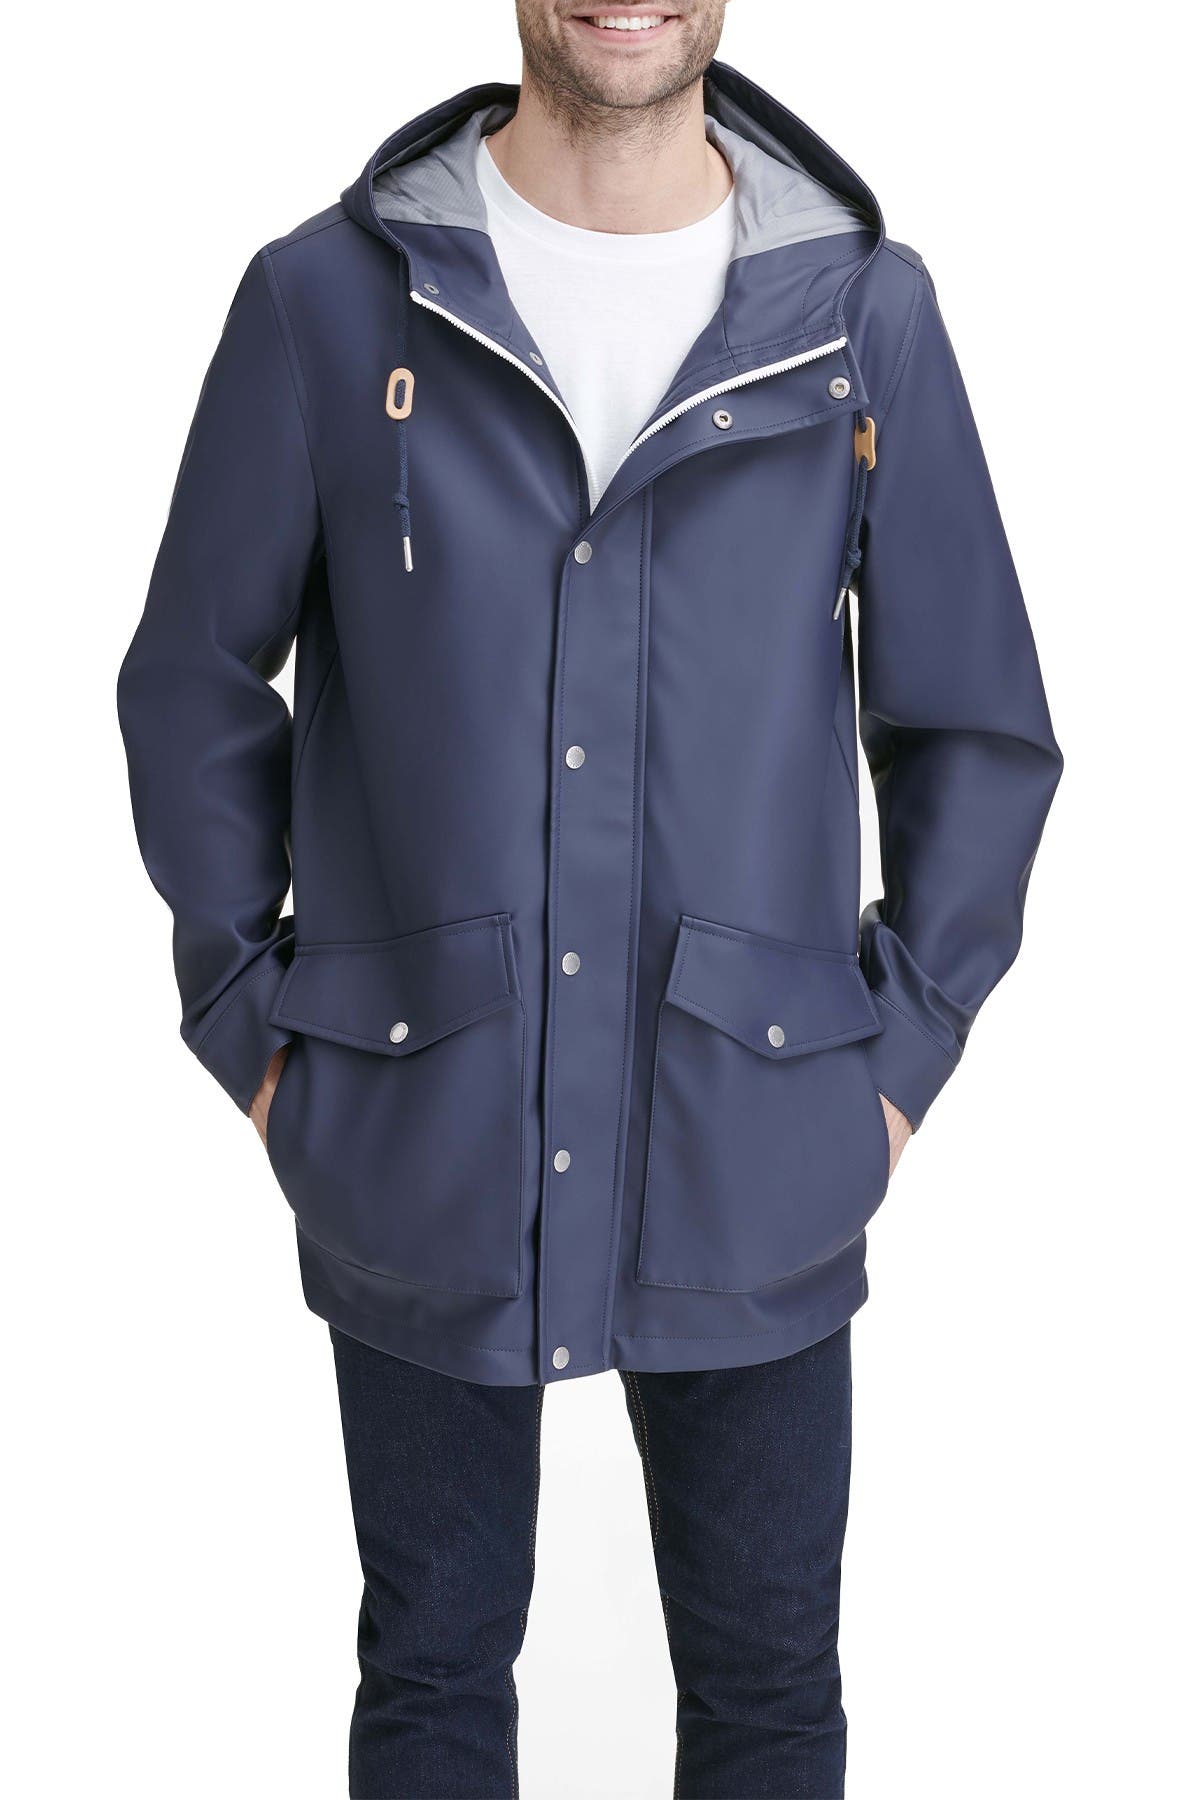 levis waterproof raincoat